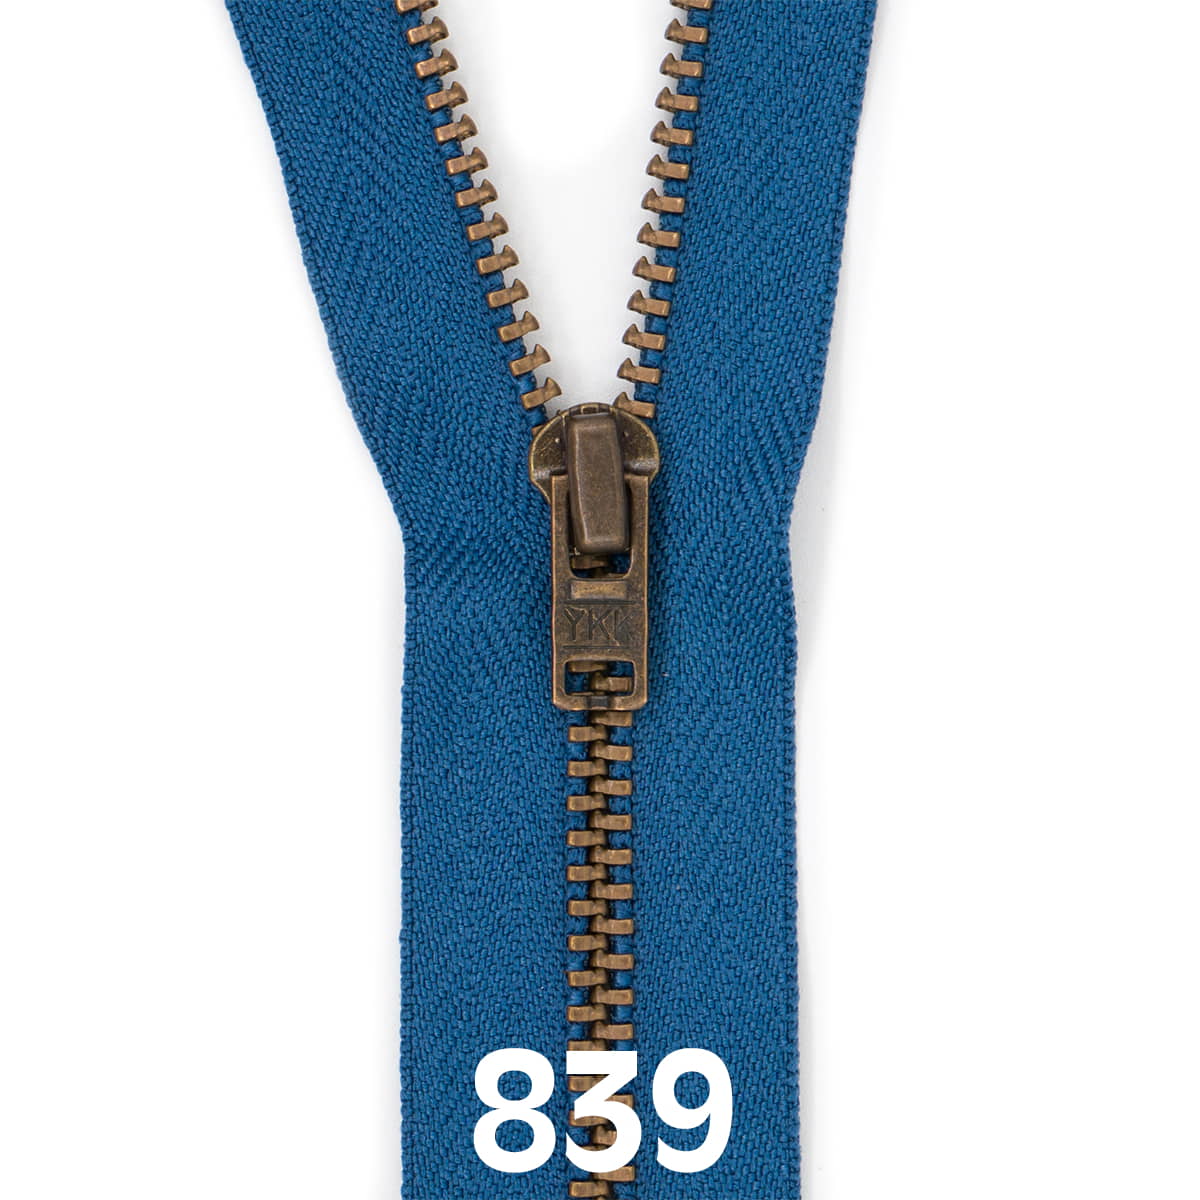 Broek rits metaal | brons fijn | 16 cm | YKK | 839 jeans blauw Rits RITS-BROEK-BRONZE-4.5-16CM-839-JEANS-BLUE - Fourniturenkraam.nl